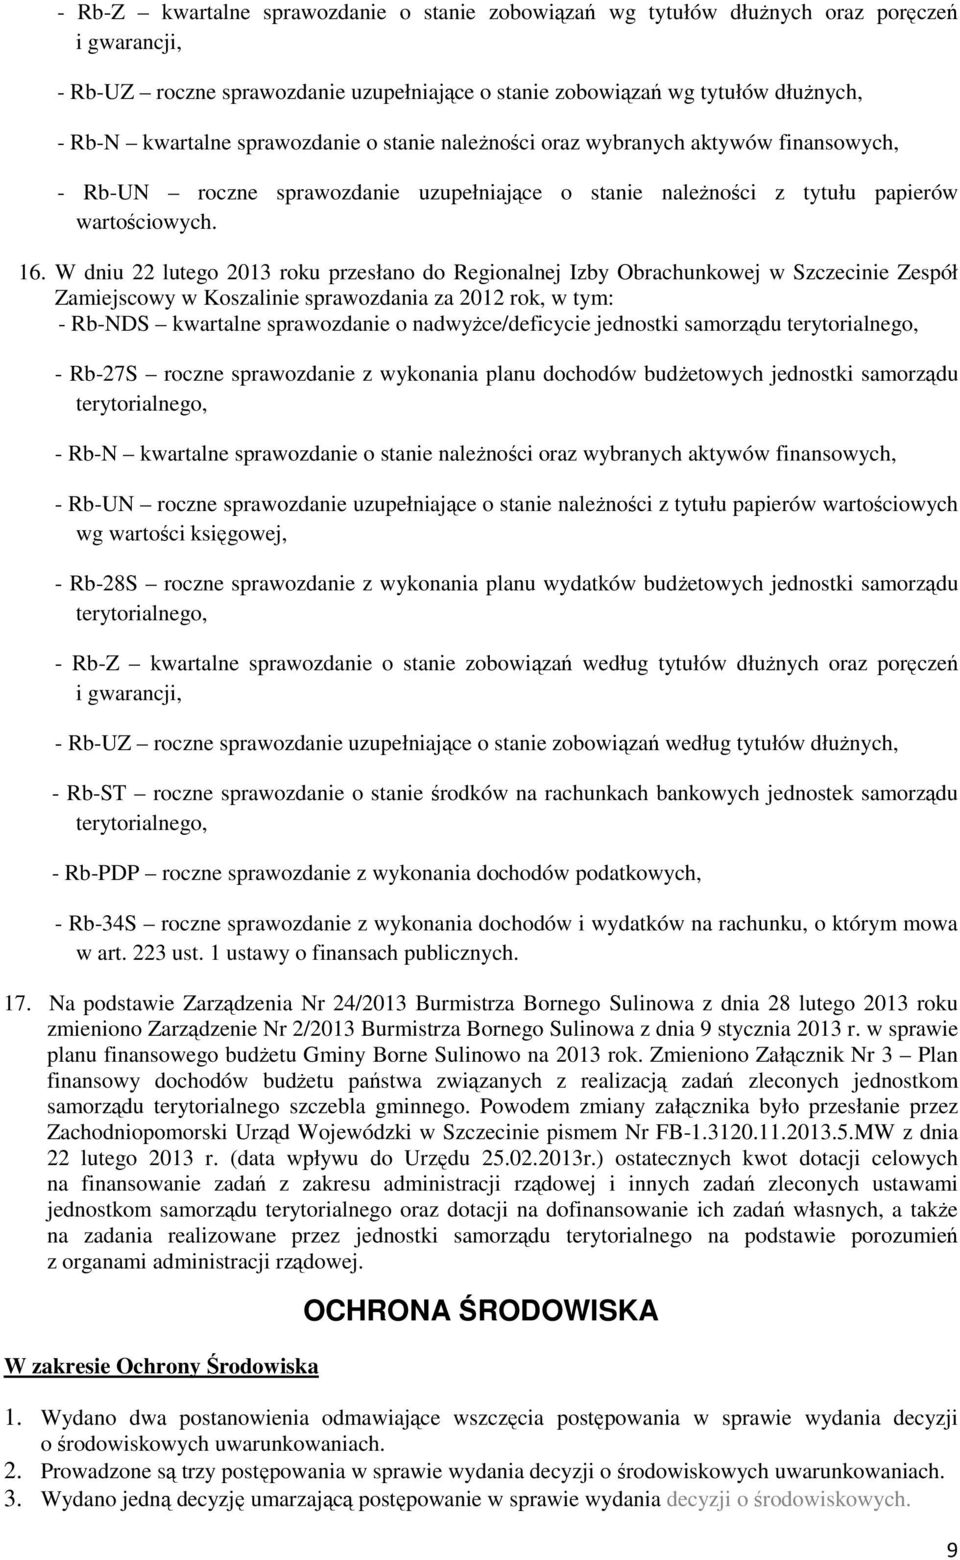 W dniu 22 lutego 2013 roku przesłano do Regionalnej Izby Obrachunkowej w Szczecinie Zespół Zamiejscowy w Koszalinie sprawozdania za 2012 rok, w tym: - Rb-NDS kwartalne sprawozdanie o